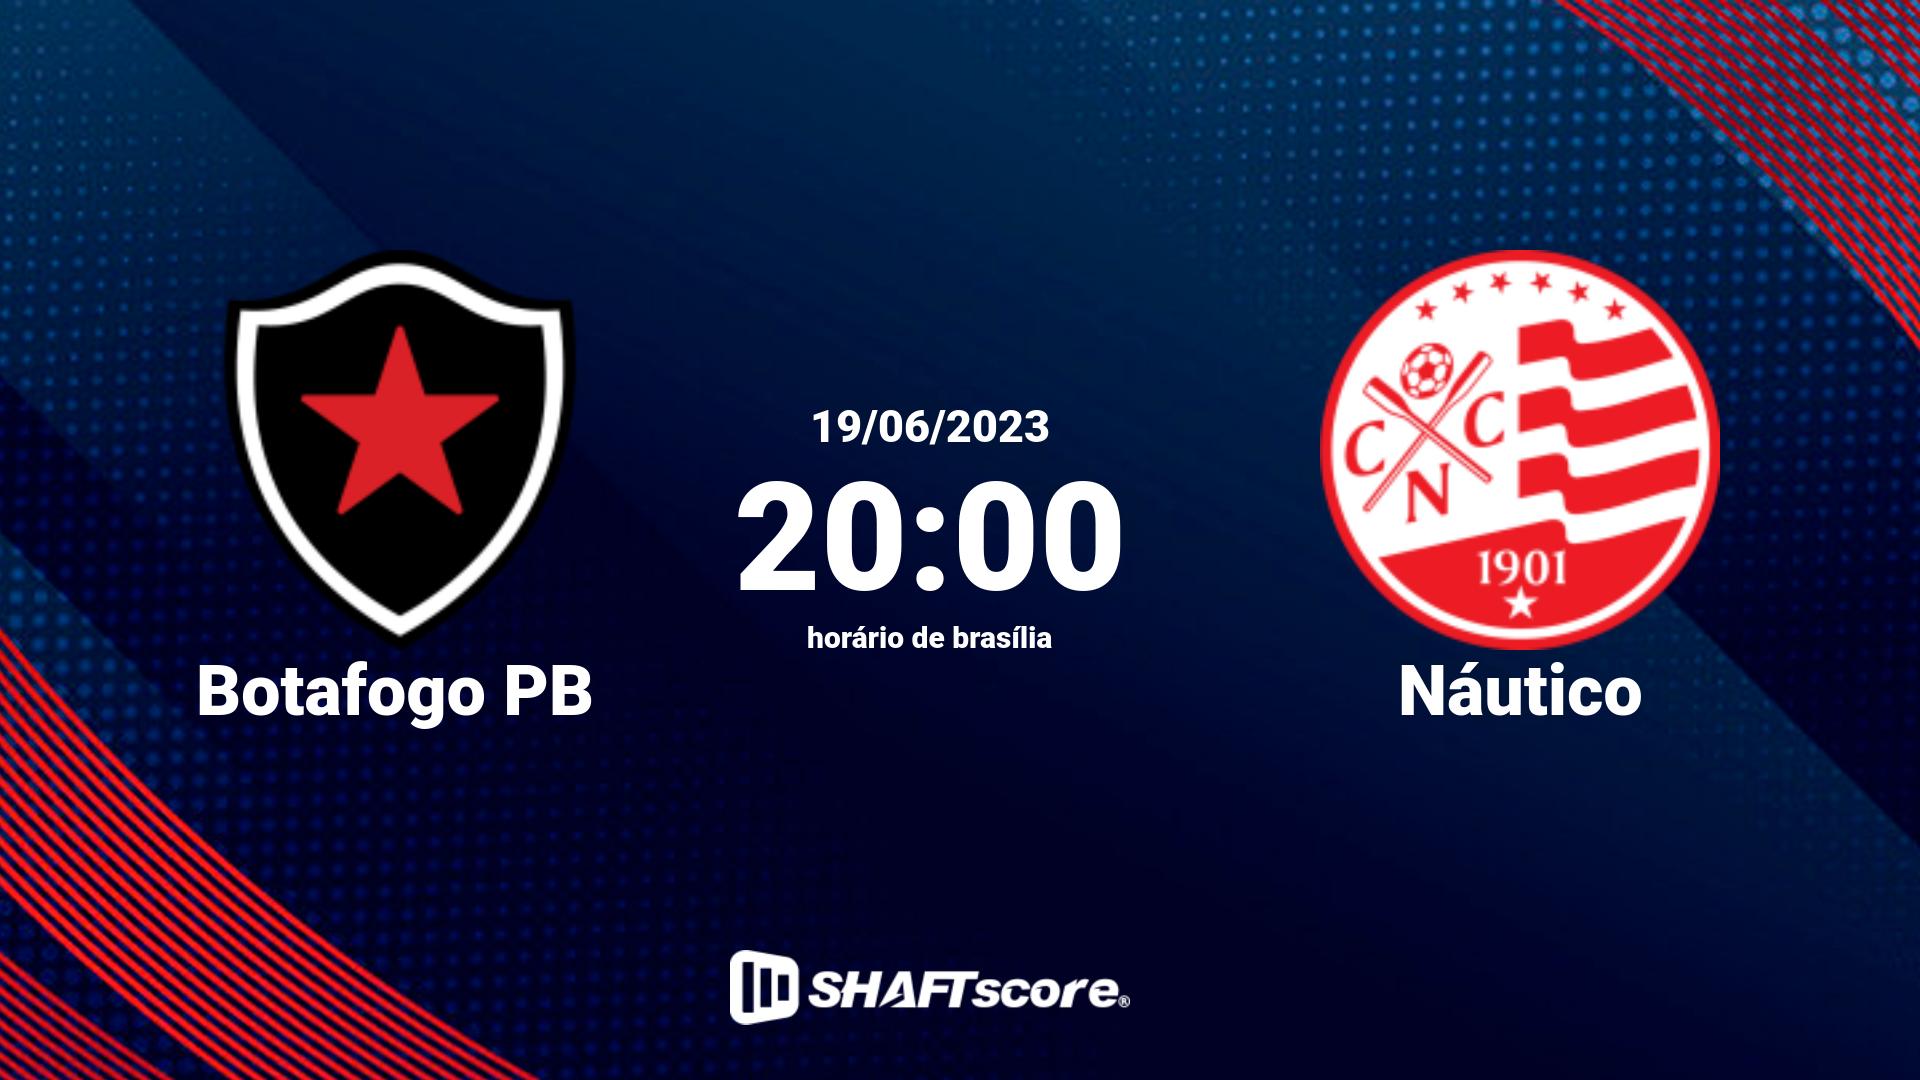 Estatísticas do jogo Botafogo PB vs Náutico 19.06 20:00